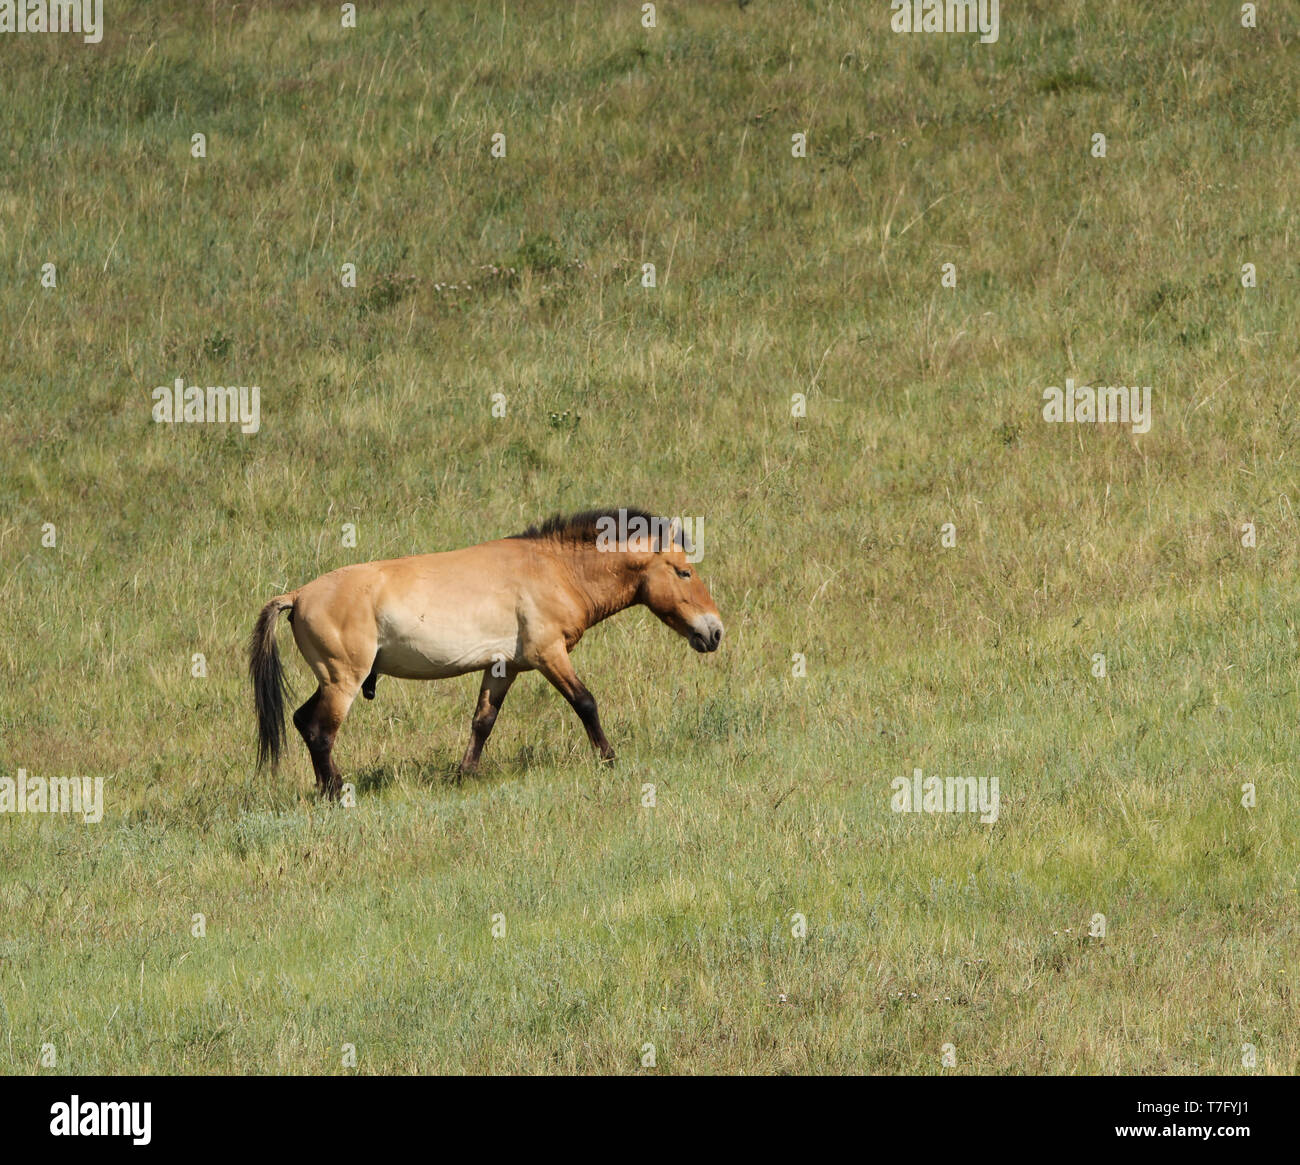 Przewalski's horse (Equus przewalskii) in Khustain Nuruu National Park, der Mongolei. Einmal in der Wildnis ausgestorben, jetzt wieder eingeführt. Stockfoto